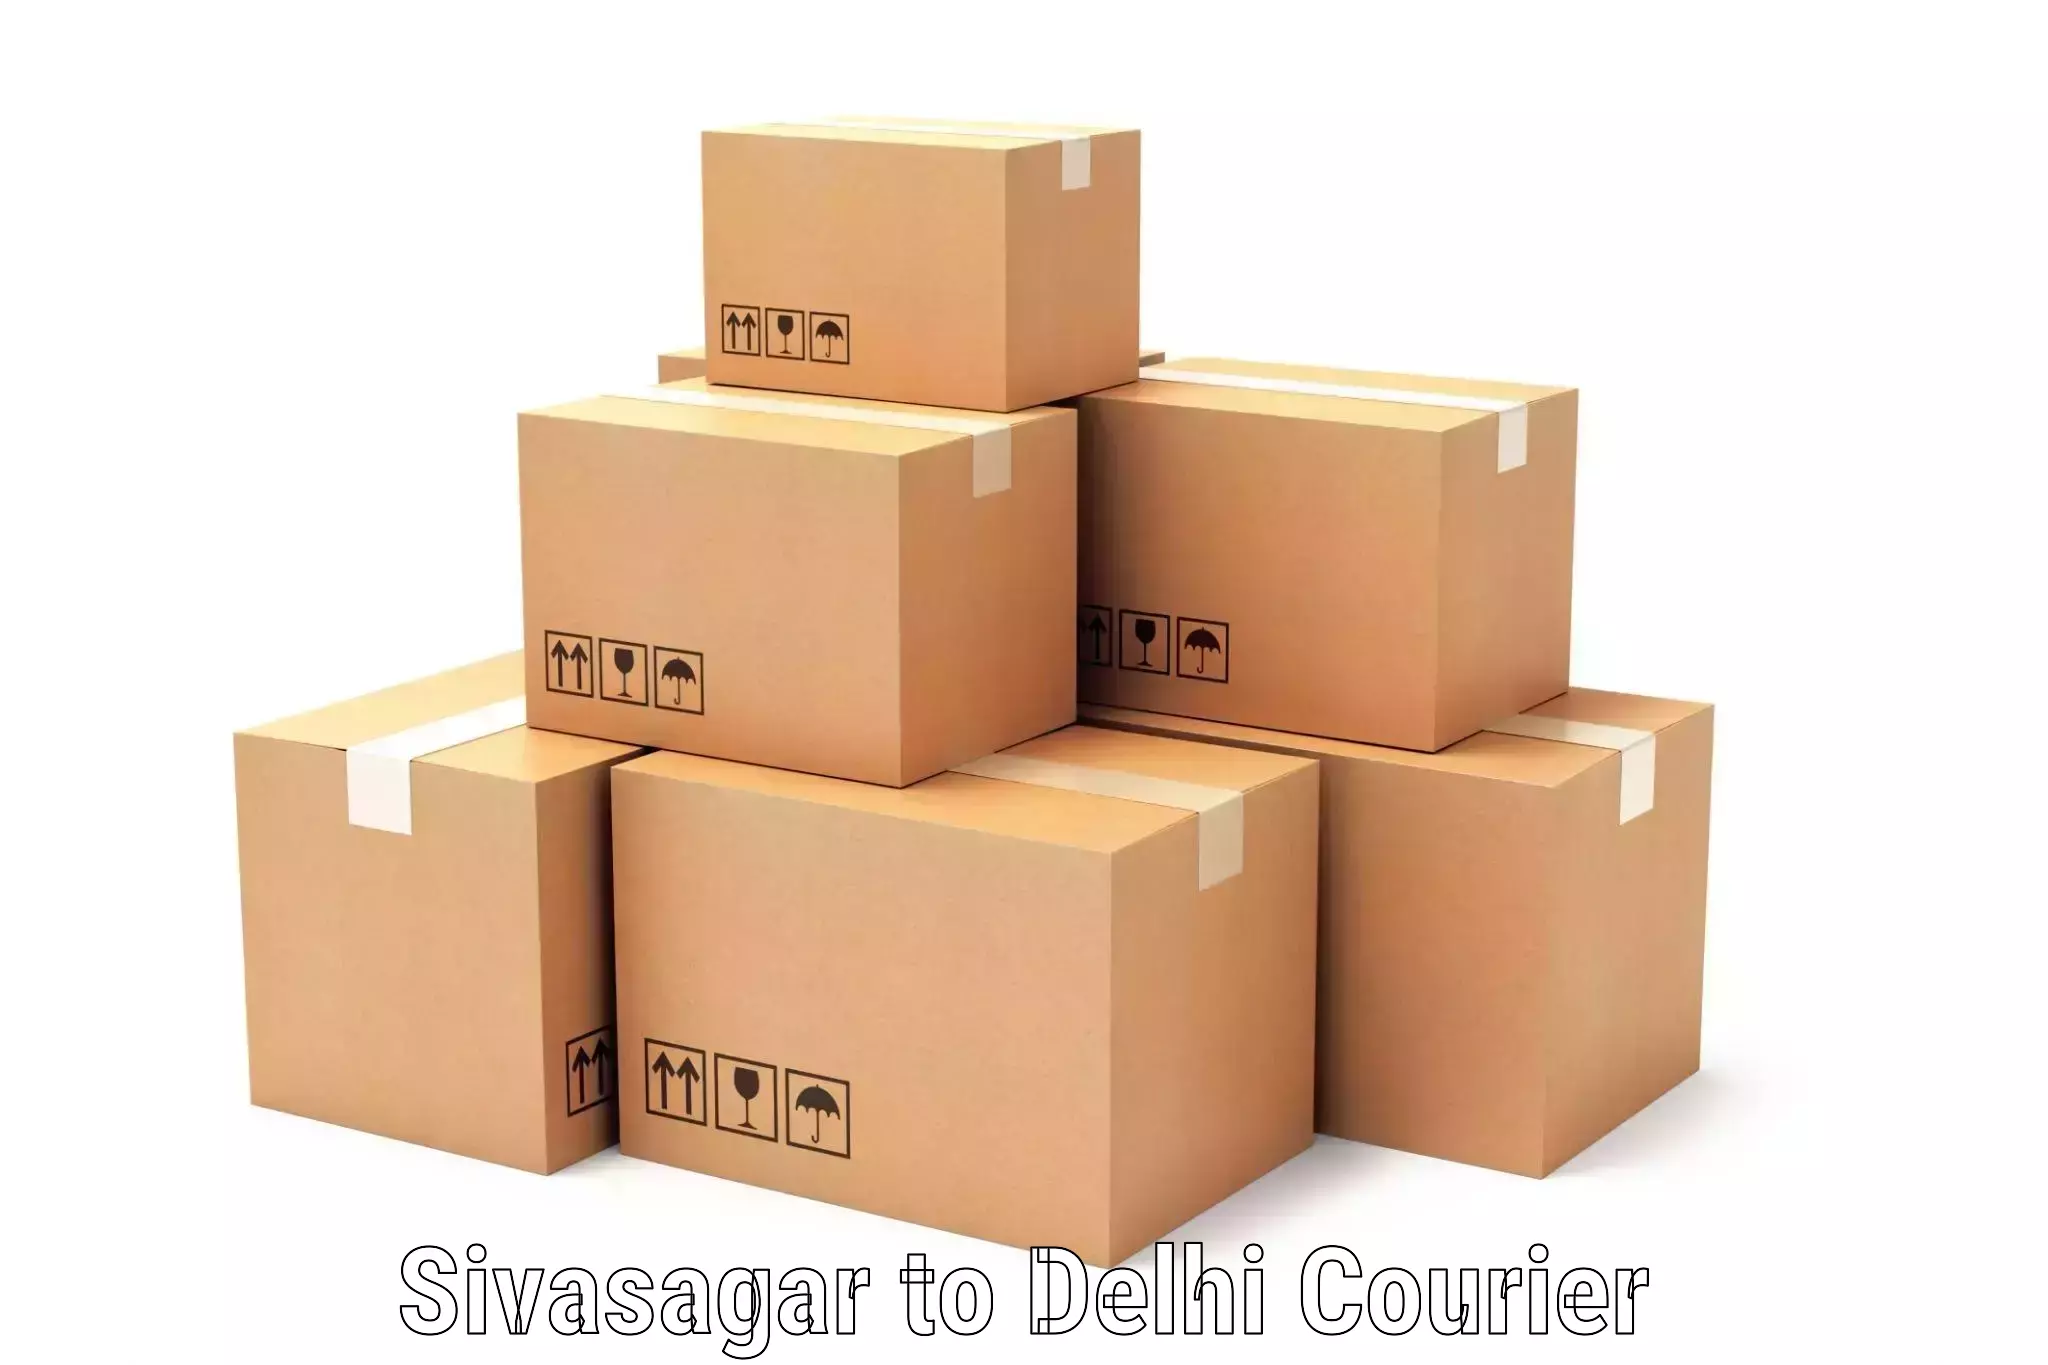 Flexible delivery schedules in Sivasagar to Ashok Vihar